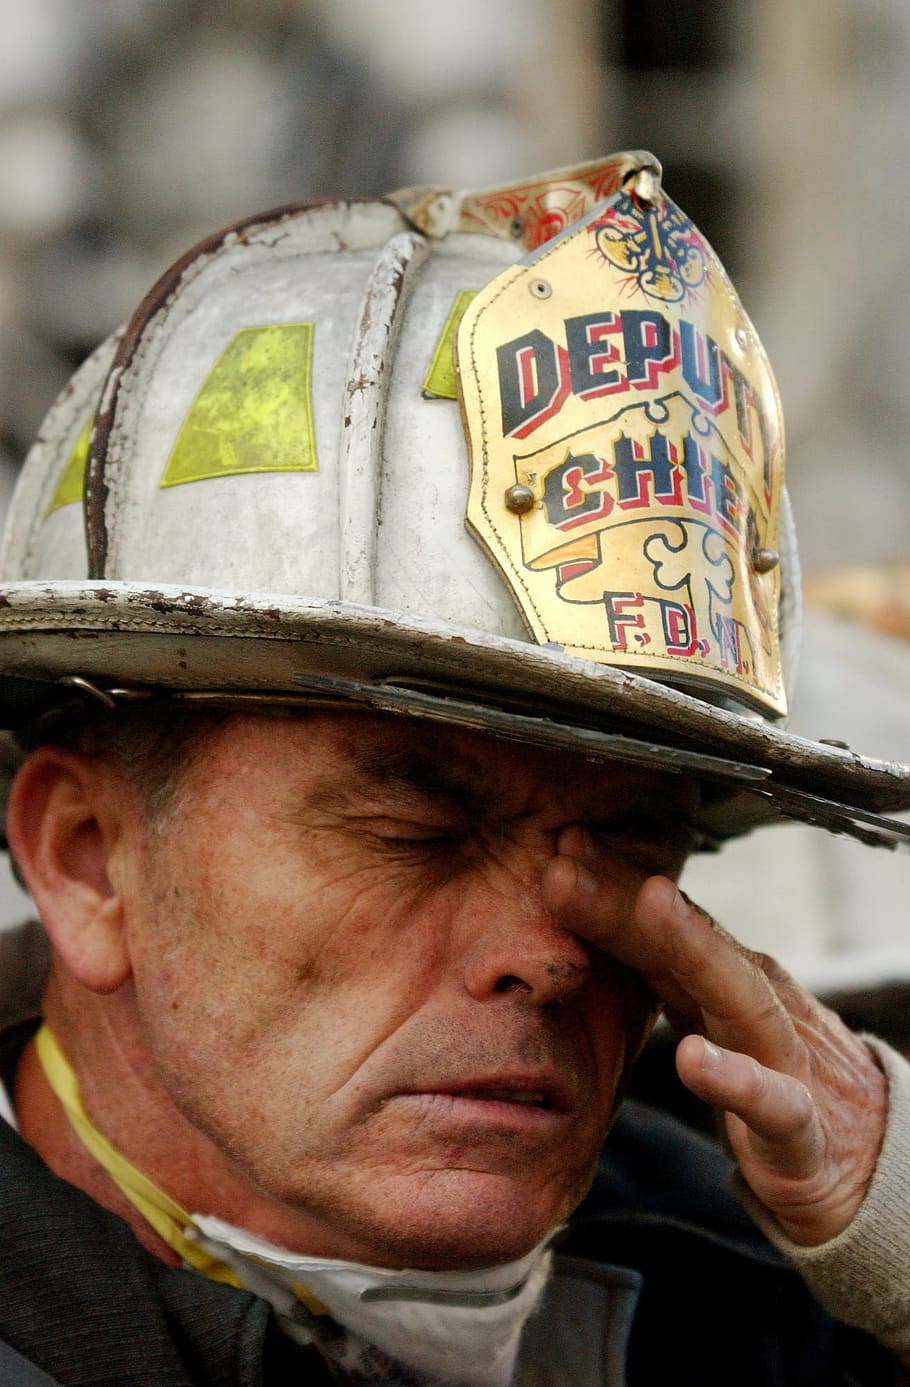 manusia mengambil selfie, pemadam kebakaran, api, 9 11, 11 september 2001, kota new york, manusia, lelah, wajah, close-up